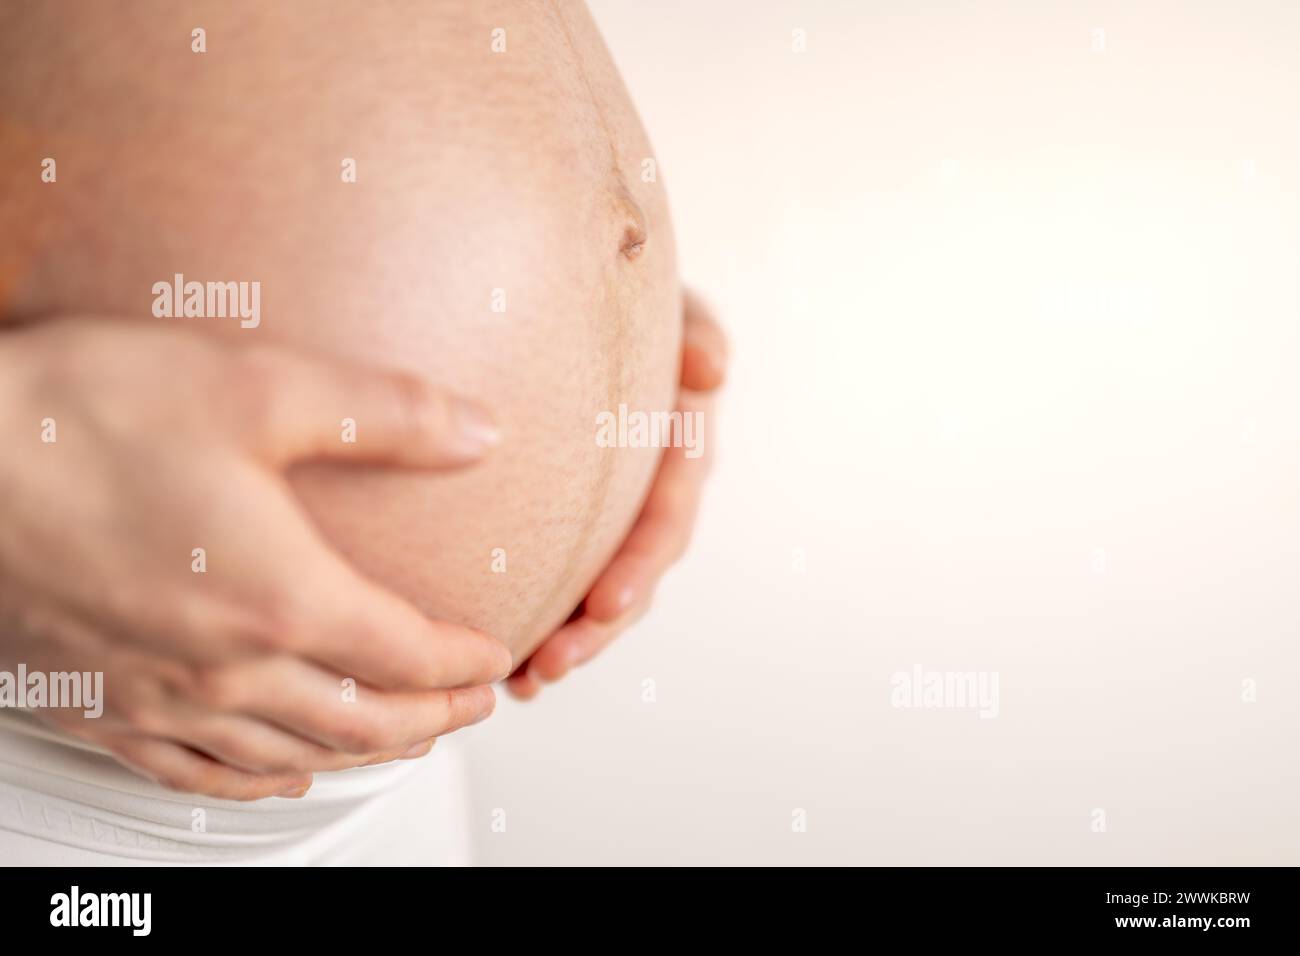 Beschreibung: Schwangere Frau, die im letzten Schwangerschaftsmonat sanft ihren nackten runden Bauch mit den Händen hält. Drittes Trimenon - Woche 36. Nahaufnahme. Seite Stockfoto